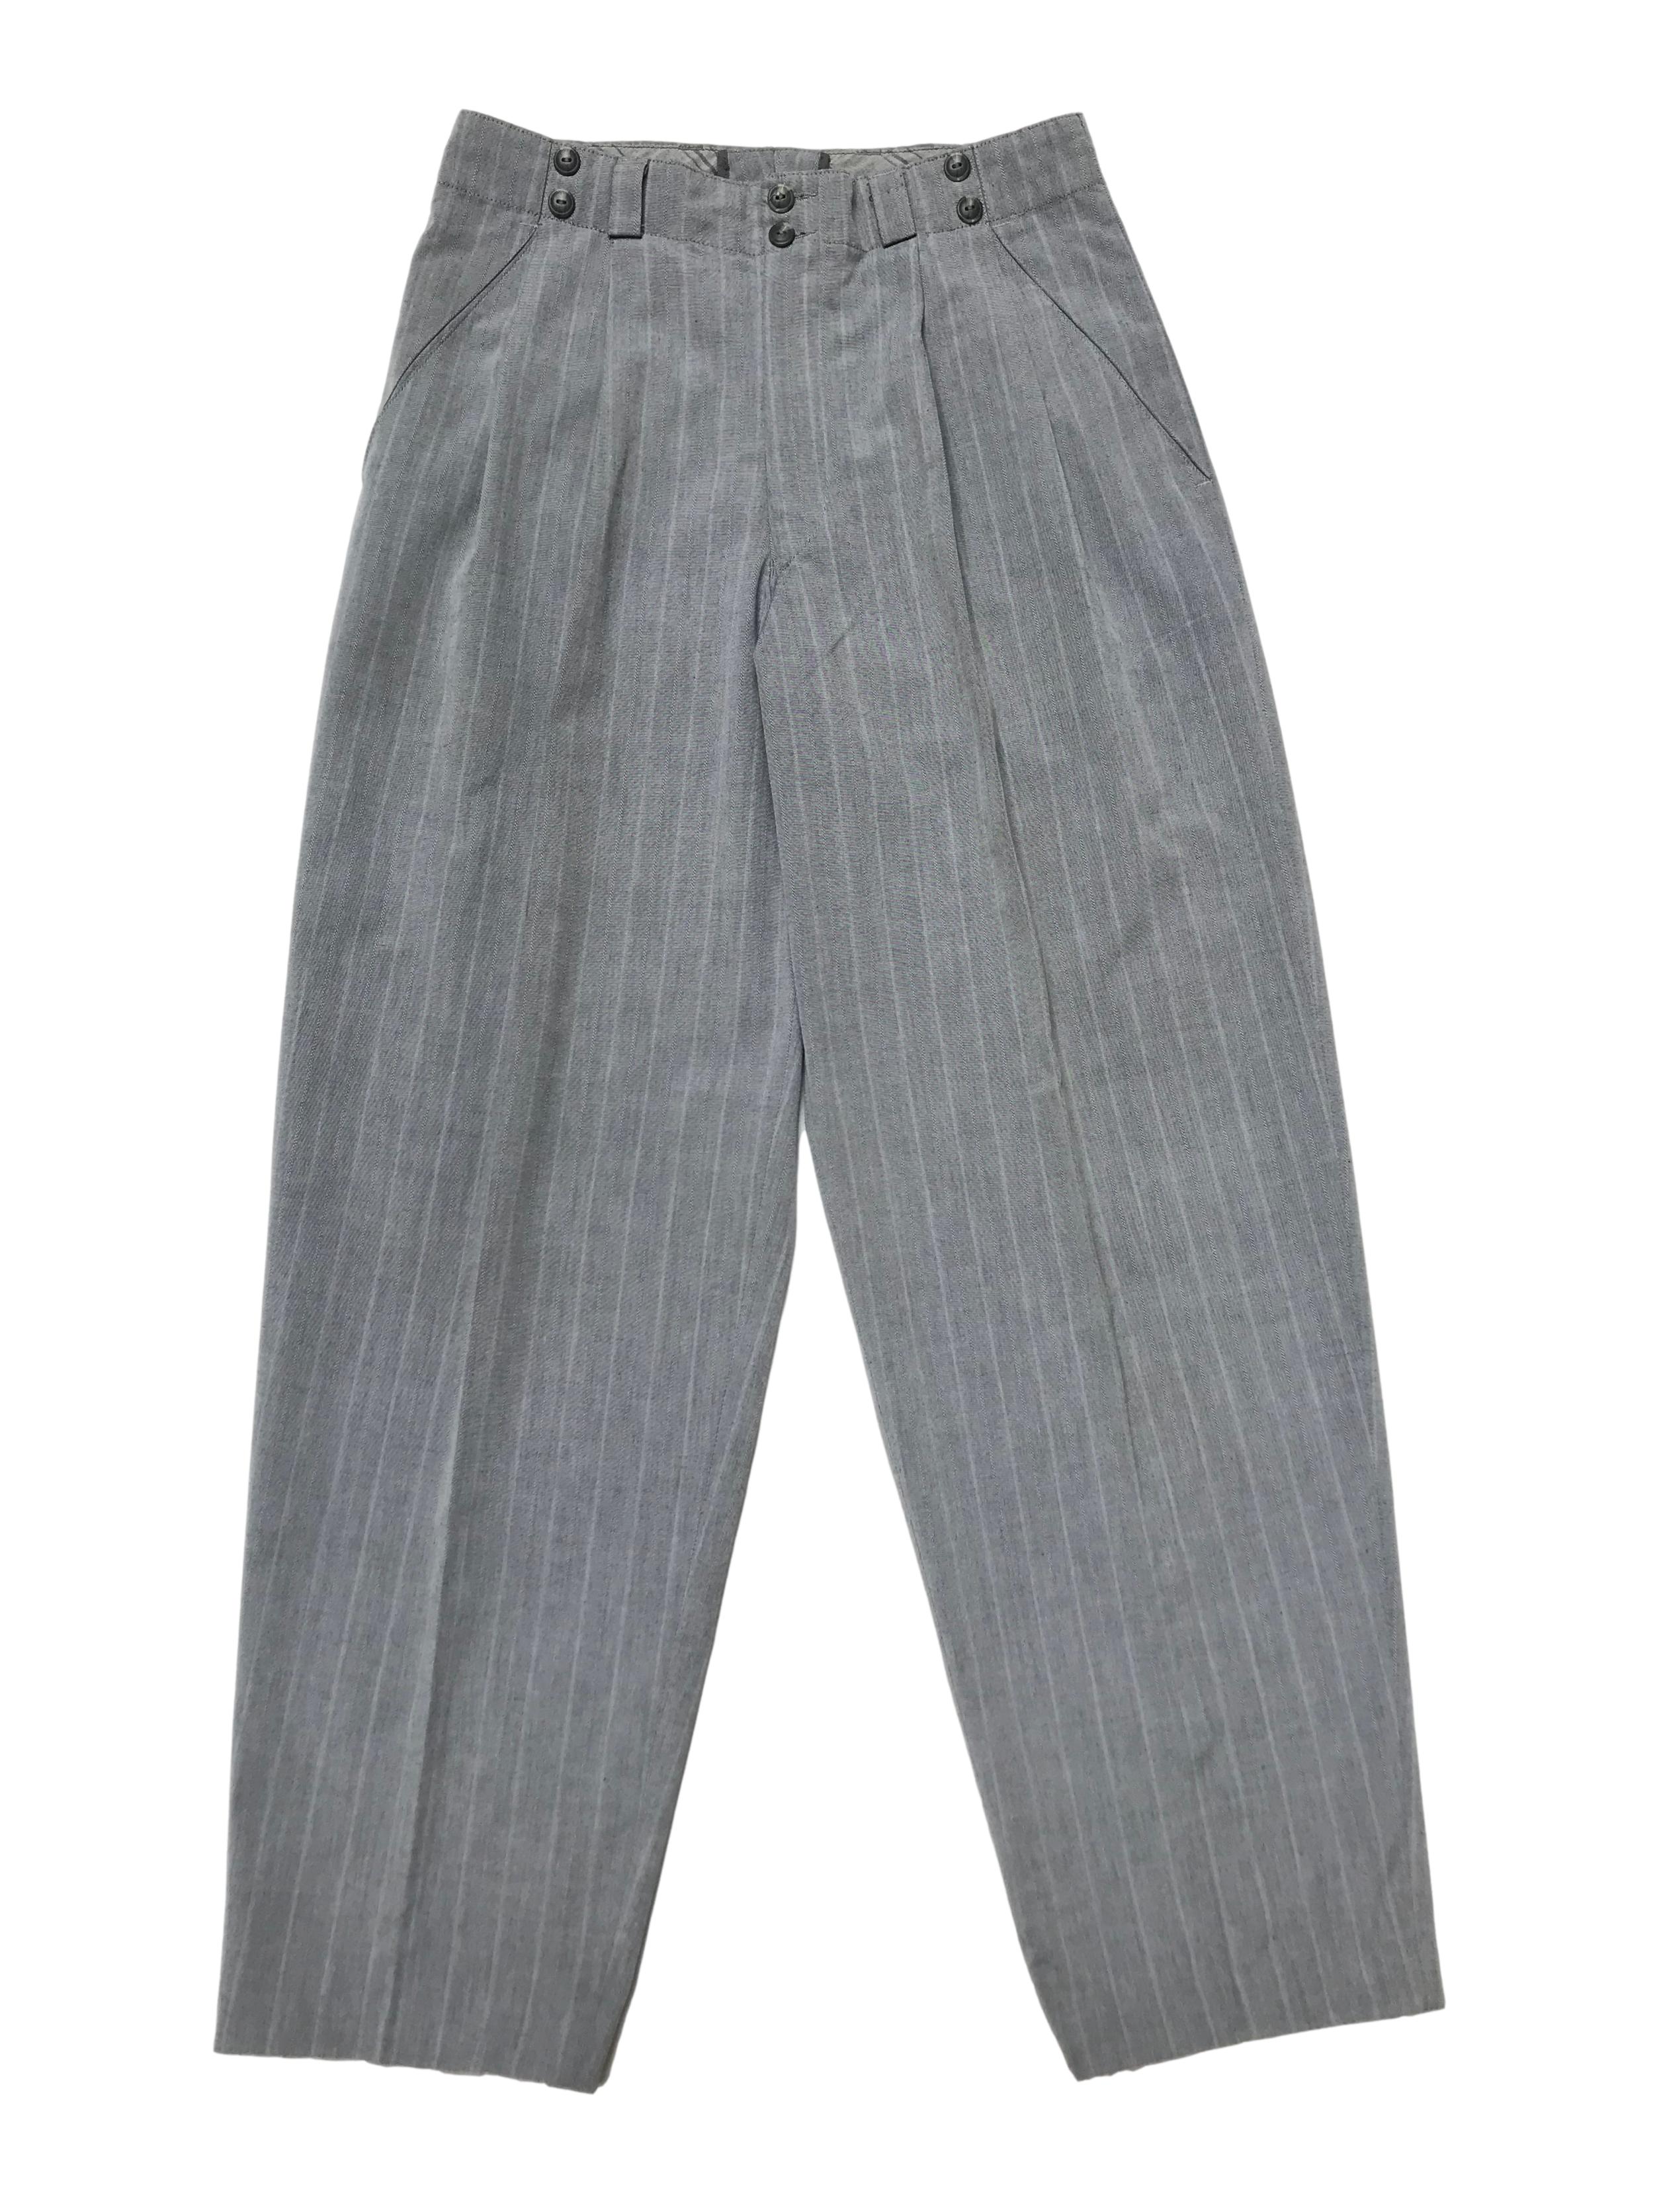 Pantalón vintage con pinzas, tipo sastre plomo con líneas al tono, cintura alta con detalle botones, tiene bolsillos laterales y uno trasero. Cintura 78 cm